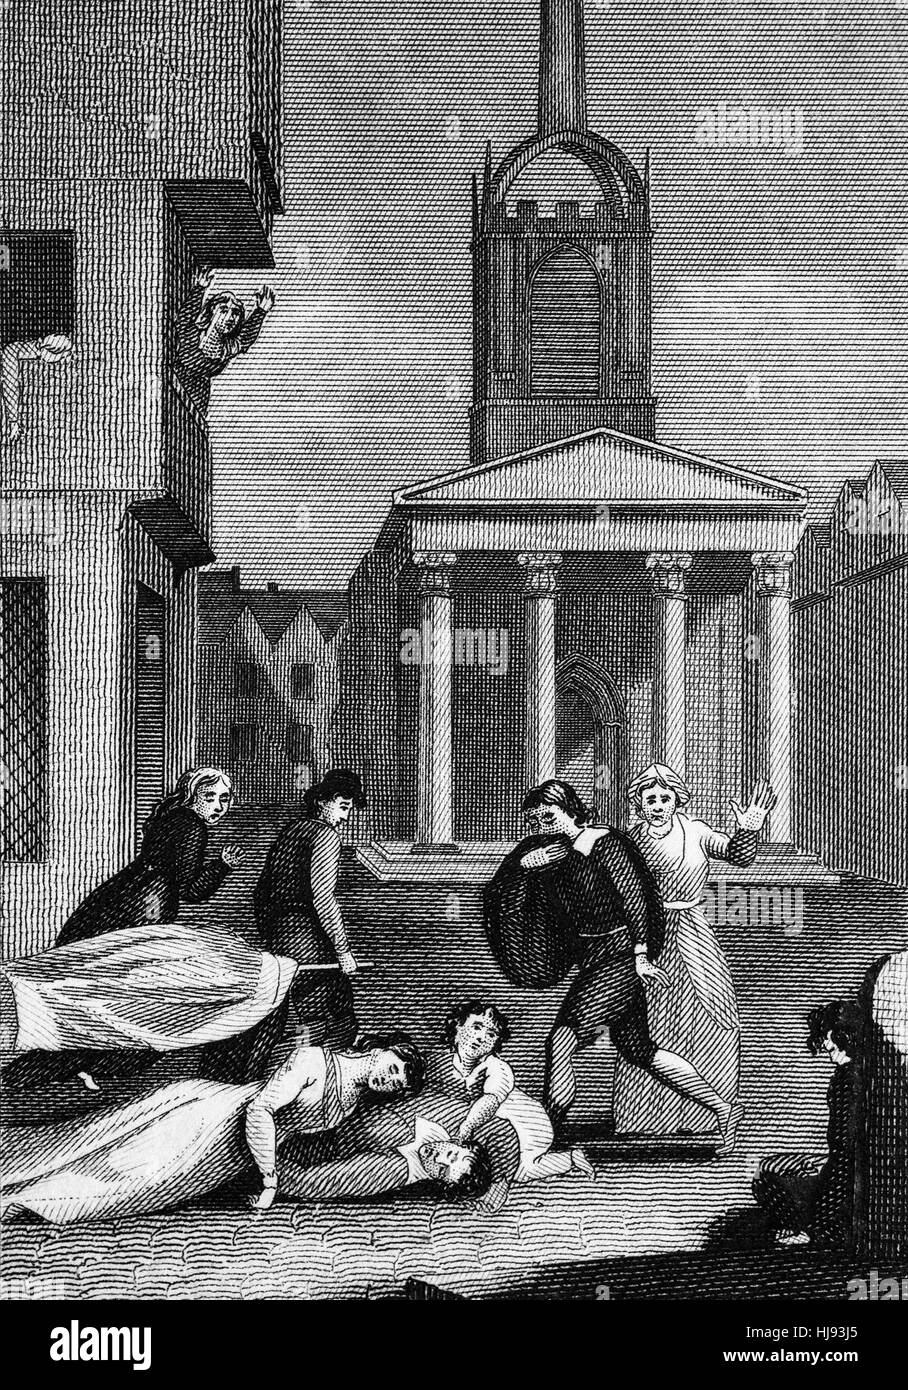 La grande peste, qui dure de 1665 à 1666, fut la dernière grande épidémie de la peste bubonique à se produire en Angleterre. Il s'est passé à l'intérieur de la période de la deuxième pandémie, une longue période d'intermittent des épidémies de peste bubonique qui a commencé en Europe en 1347, la première année de la mort noire, une épidémie qui comprenait d'autres formes comme la peste, et a duré jusqu'en 1750. Banque D'Images